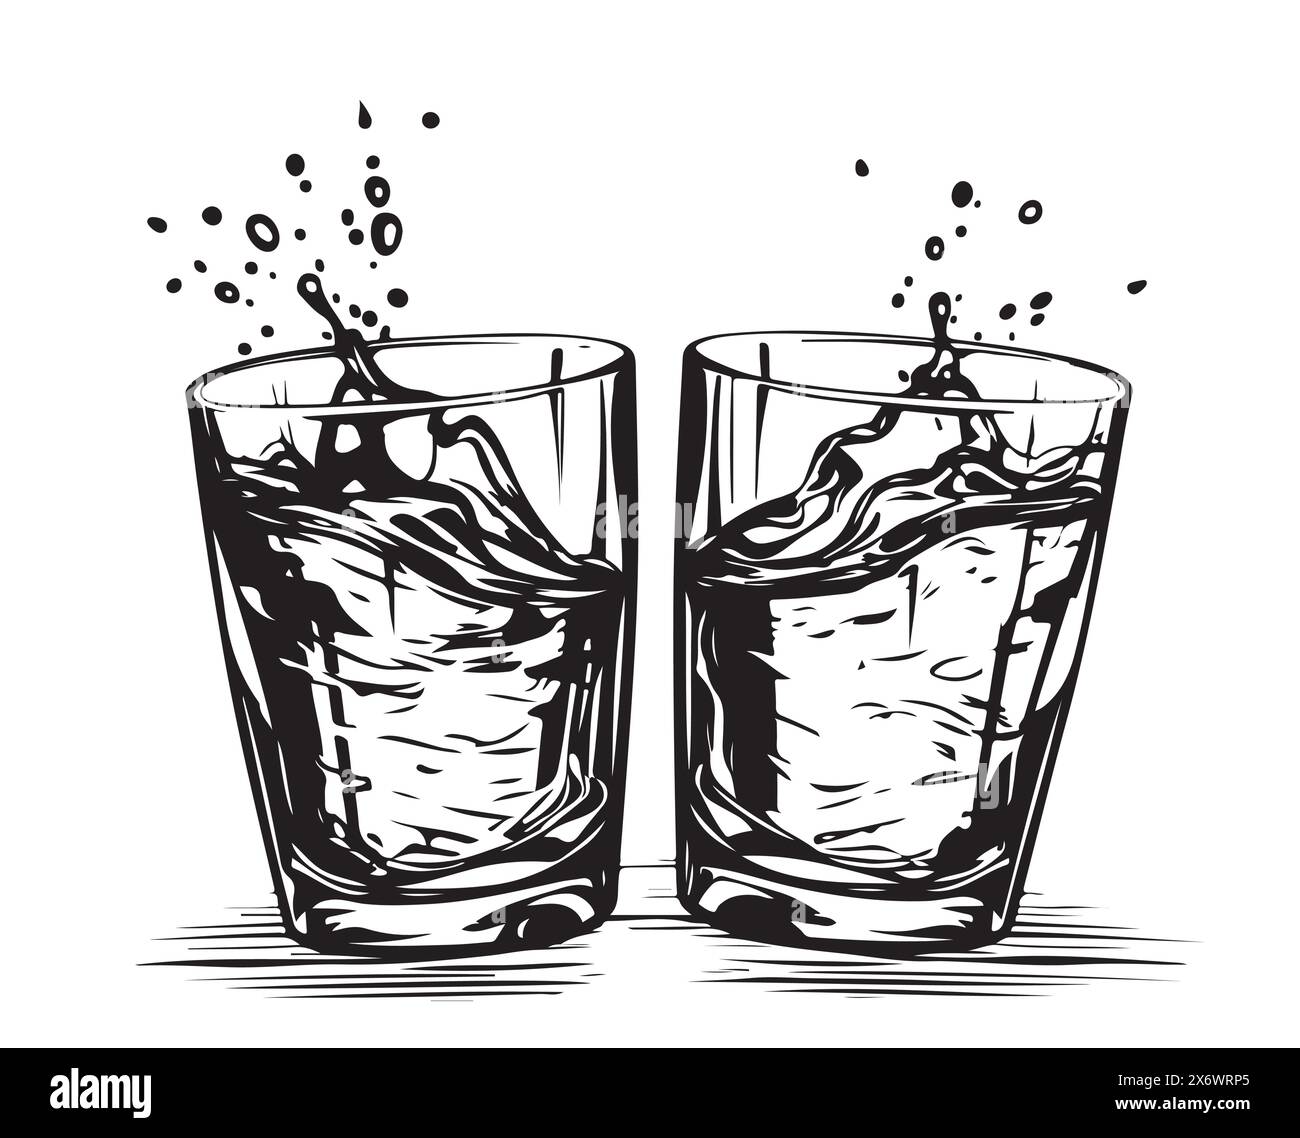 Ciambelle i bicchieri insieme al whisky. Stile disegnato a mano. Design di bevande alcoliche. Illustrazione vettoriale Illustrazione Vettoriale